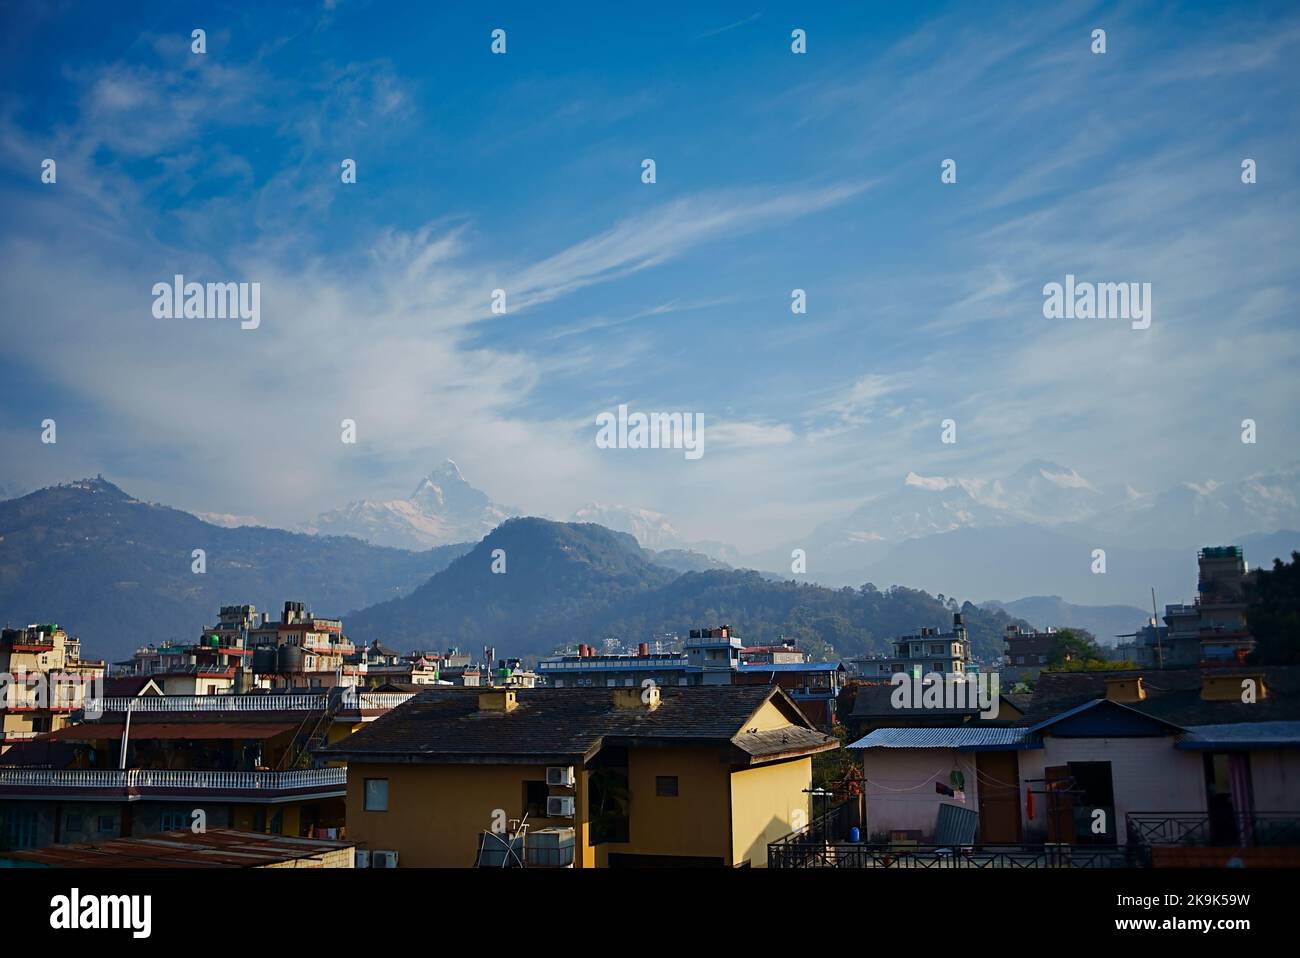 Landschaften der Schneespitze und der Bergketten in der Umgebung von Pokhra in Nepal. Pokhra ist ein gut bekannt Touristenziel Himalaya-Tor Stockfoto